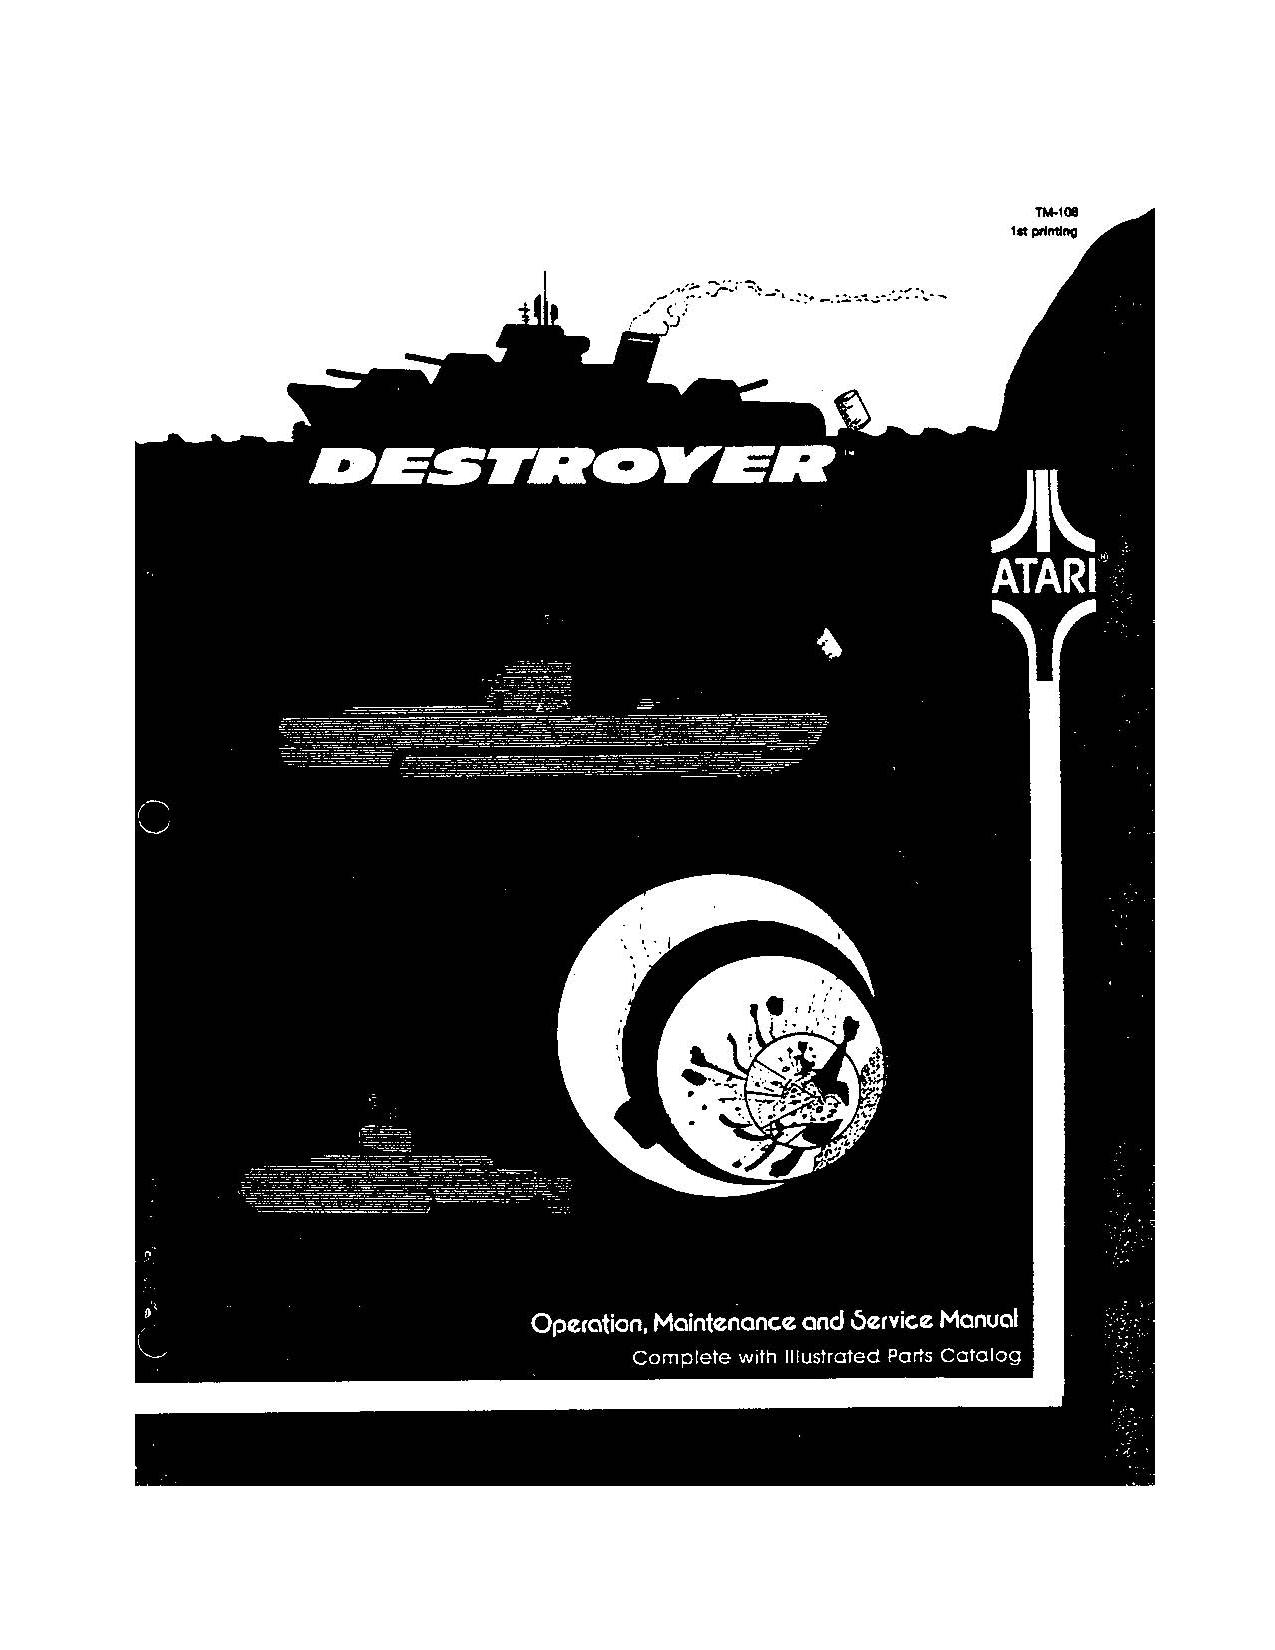 Destroyer (TM-108 1st Printing) (Op-Maint-Serv-Parts) (U)